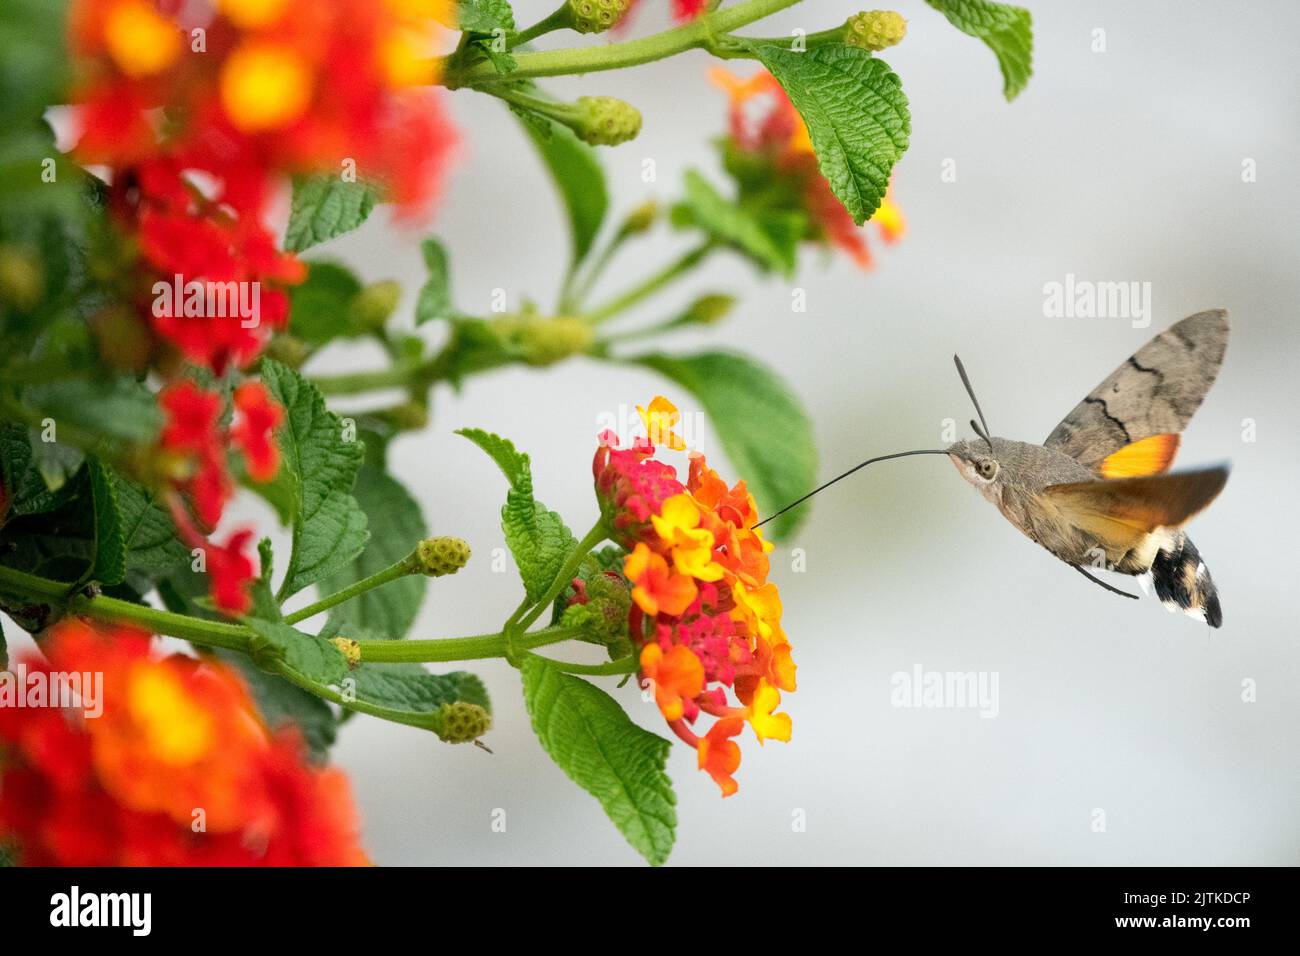 Flying Moth to Flower, Lantana camara, Spanish flag, Macroglossum stellatarum, Hummingbird hawk-moth, Nectaring, Flowering, Plant Stock Photo